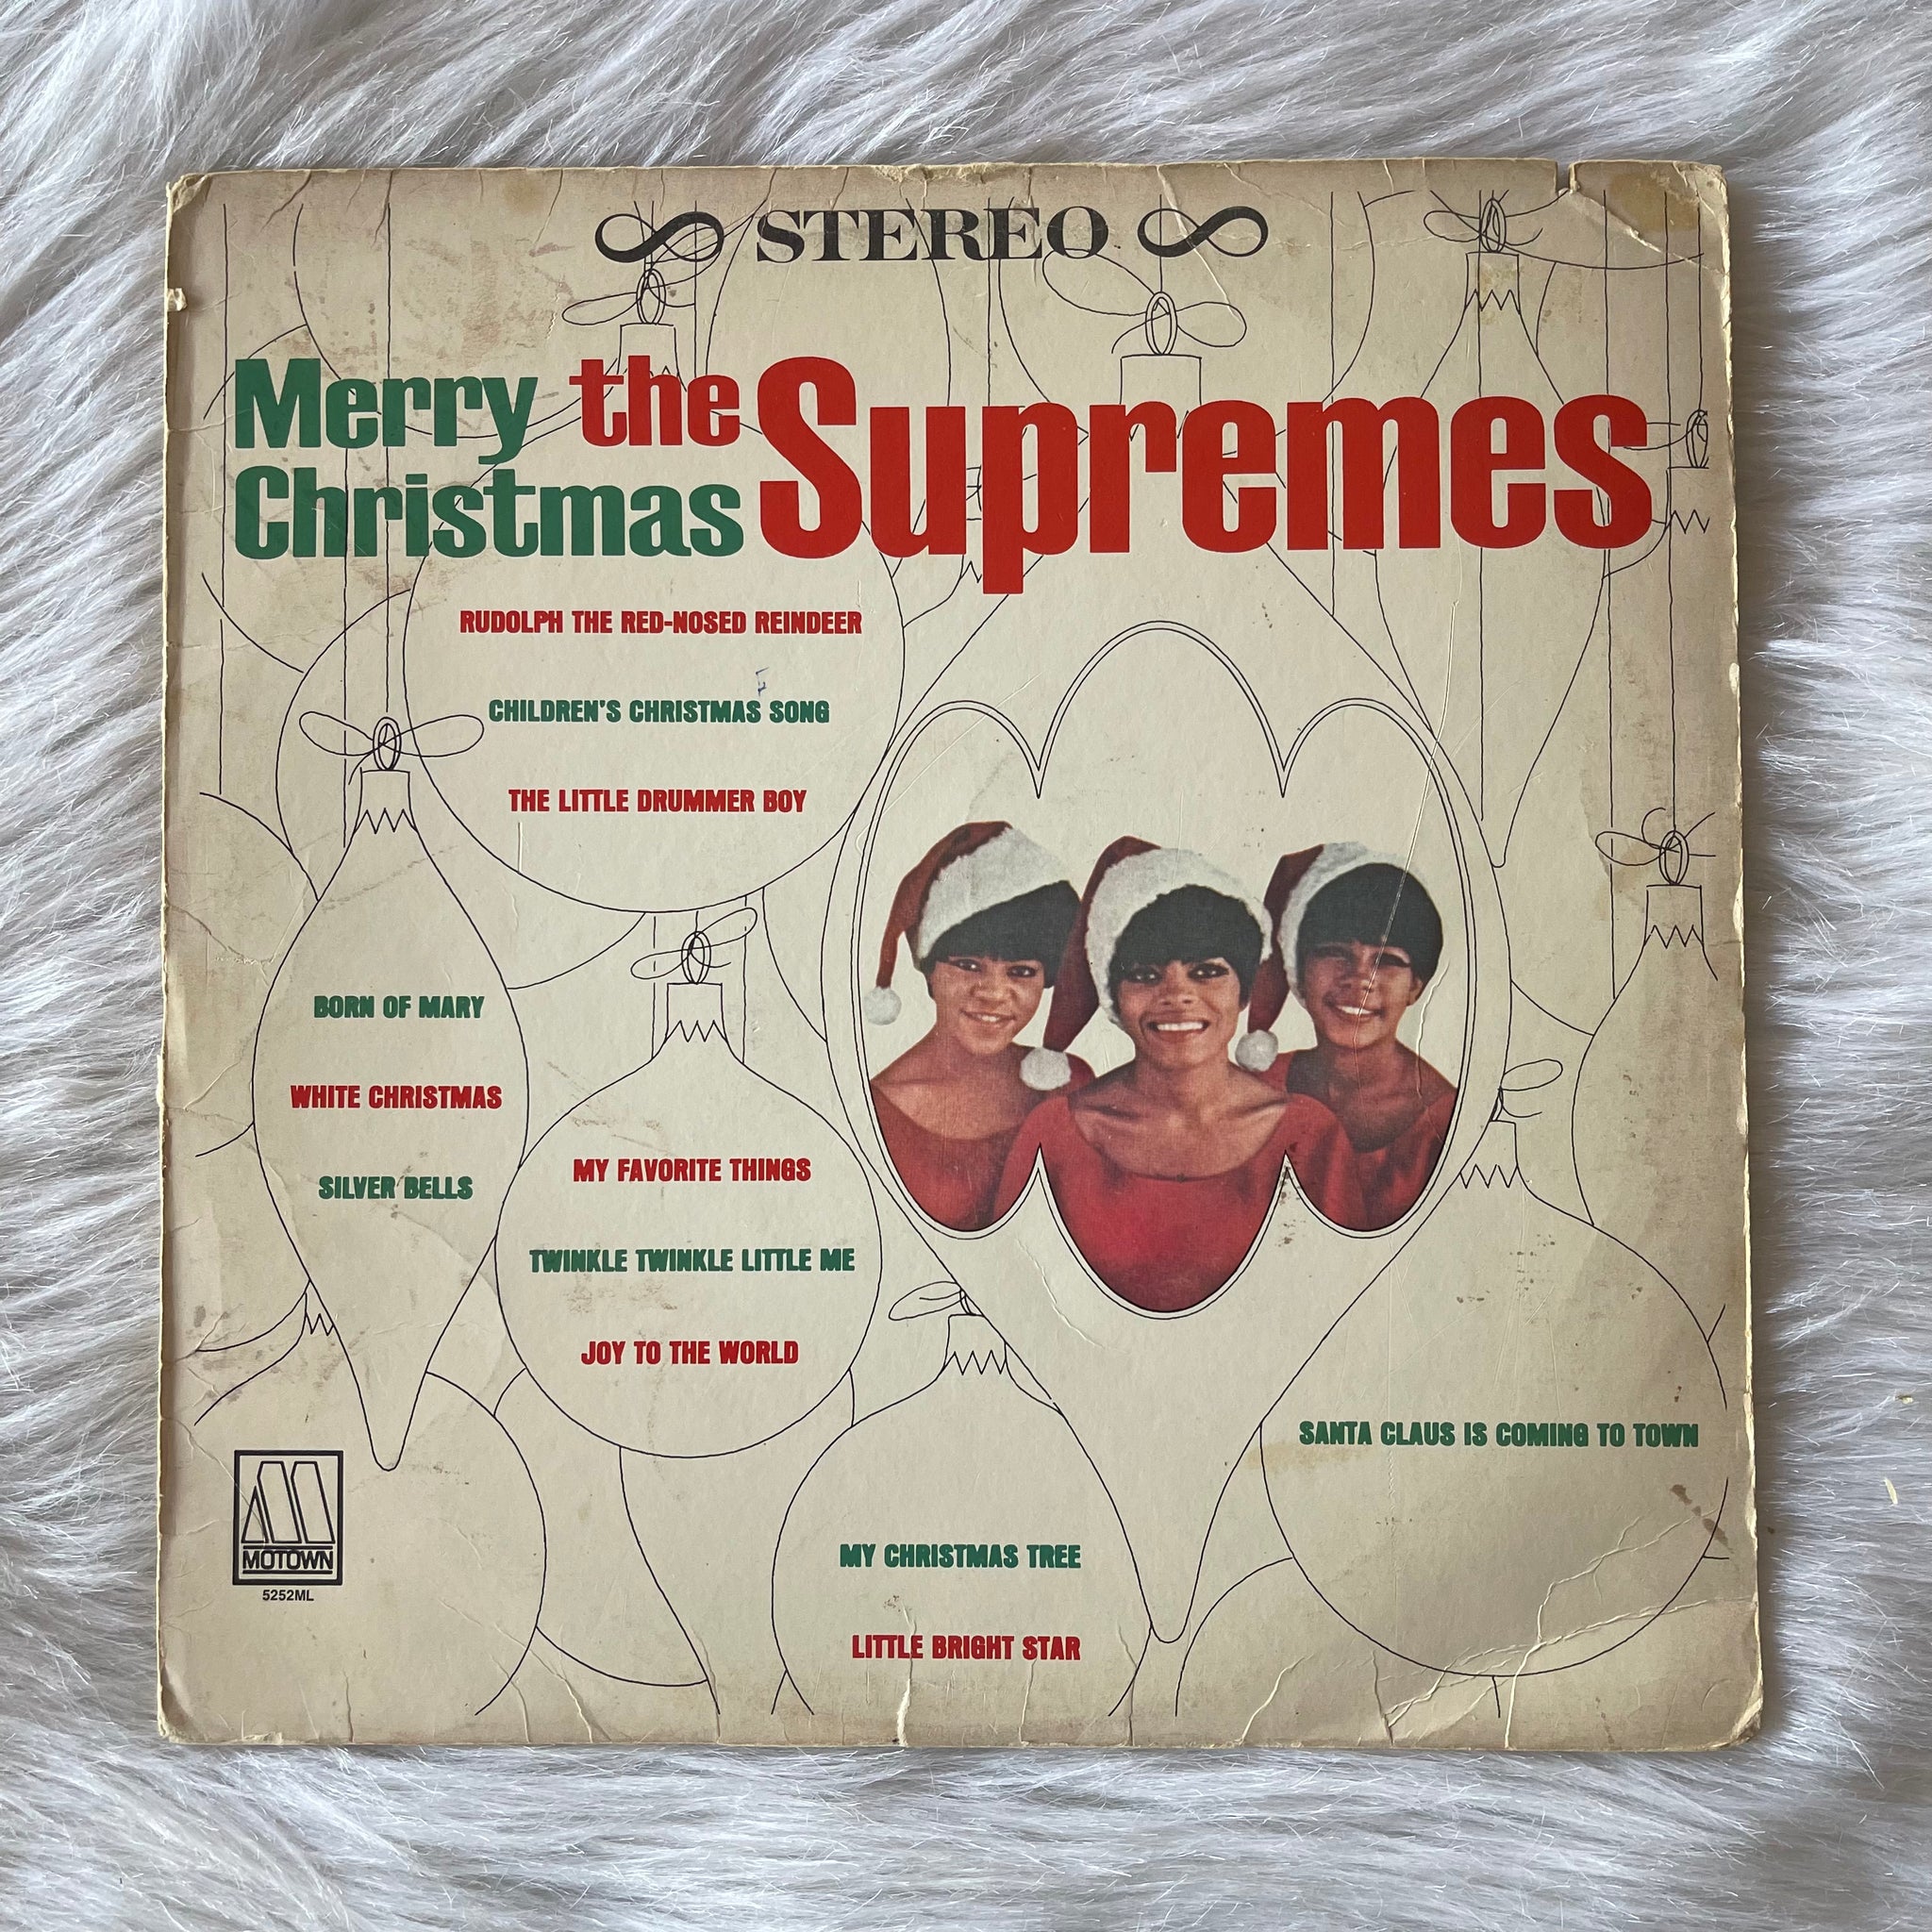 The Supremes-Merry Christmas